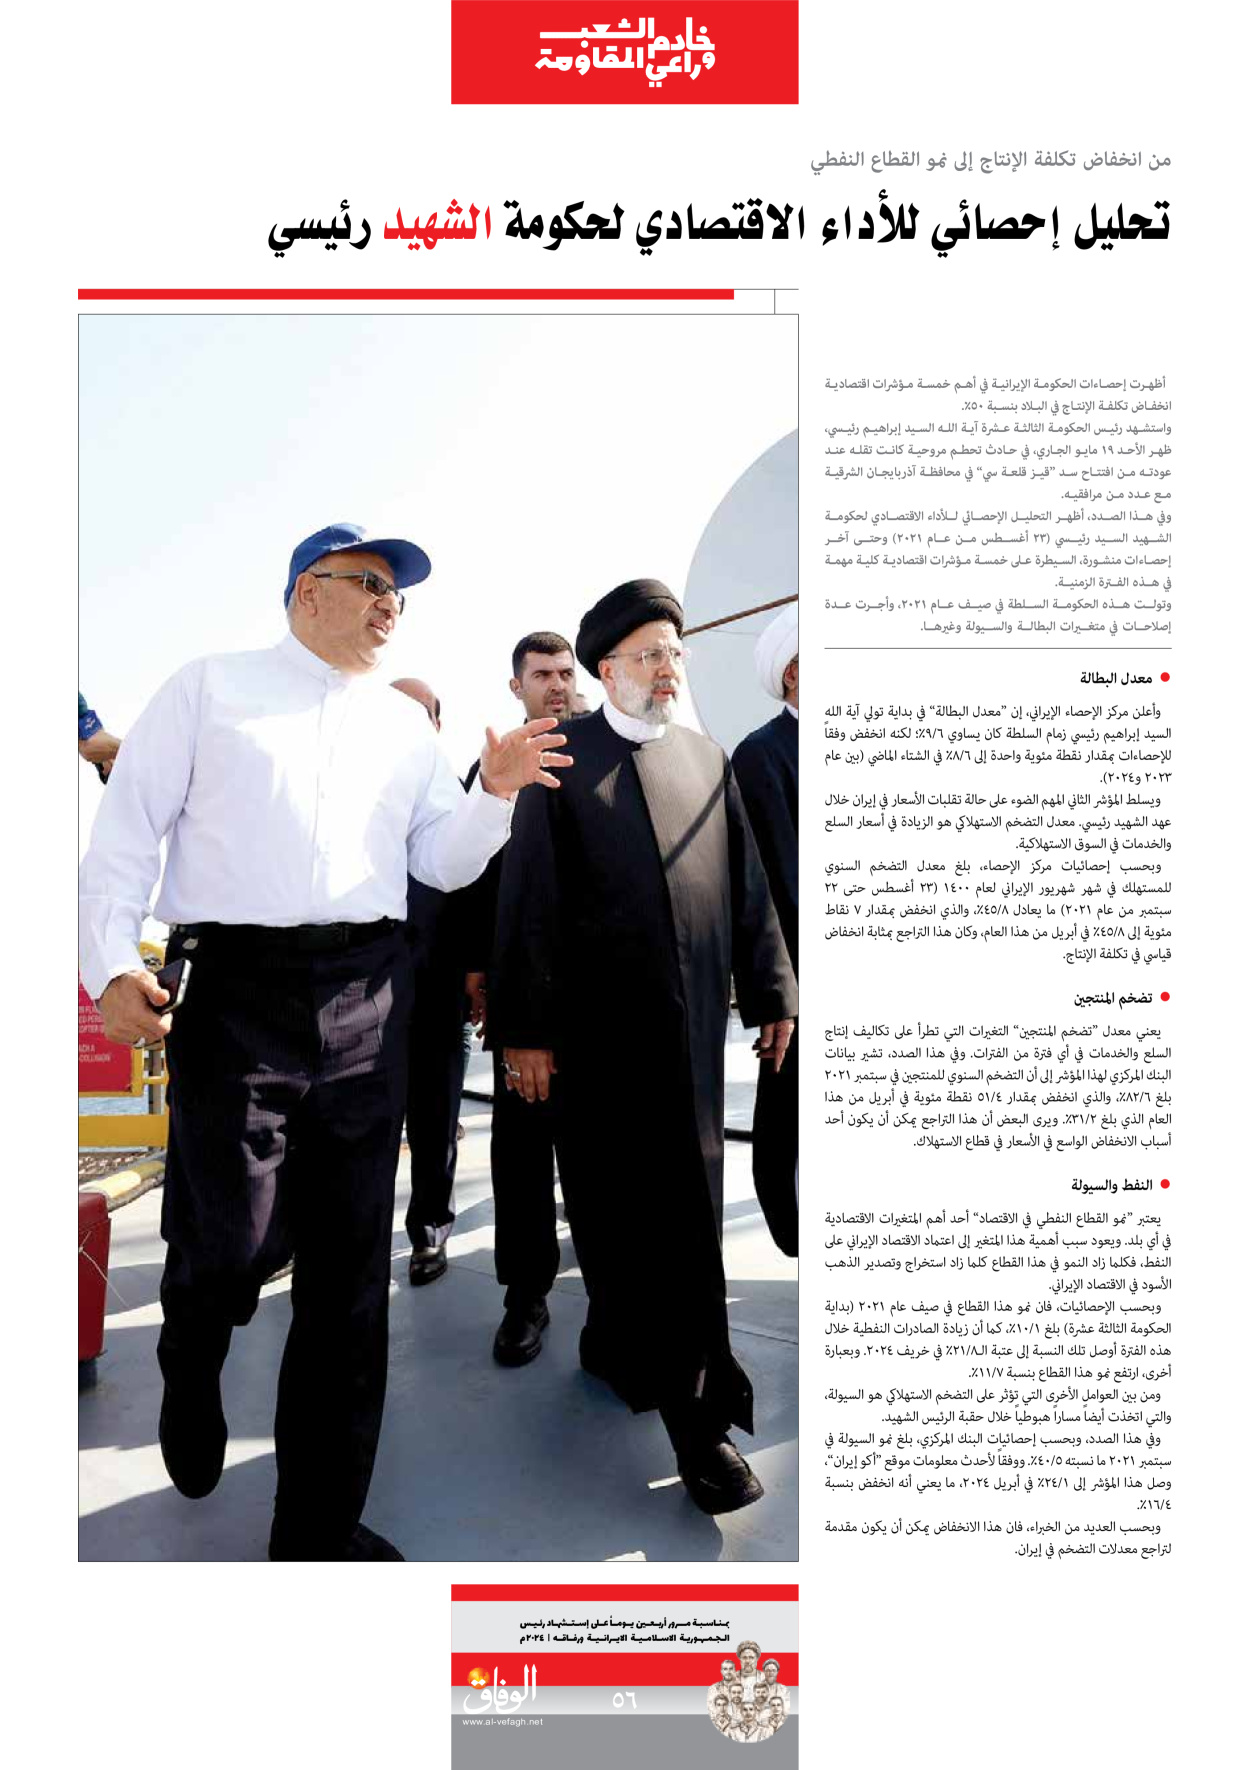 صحیفة ایران الدولیة الوفاق - ملحق ویژه نامه چهلم شهید رییسی - ٢٩ يونيو ٢٠٢٤ - الصفحة ٥٦